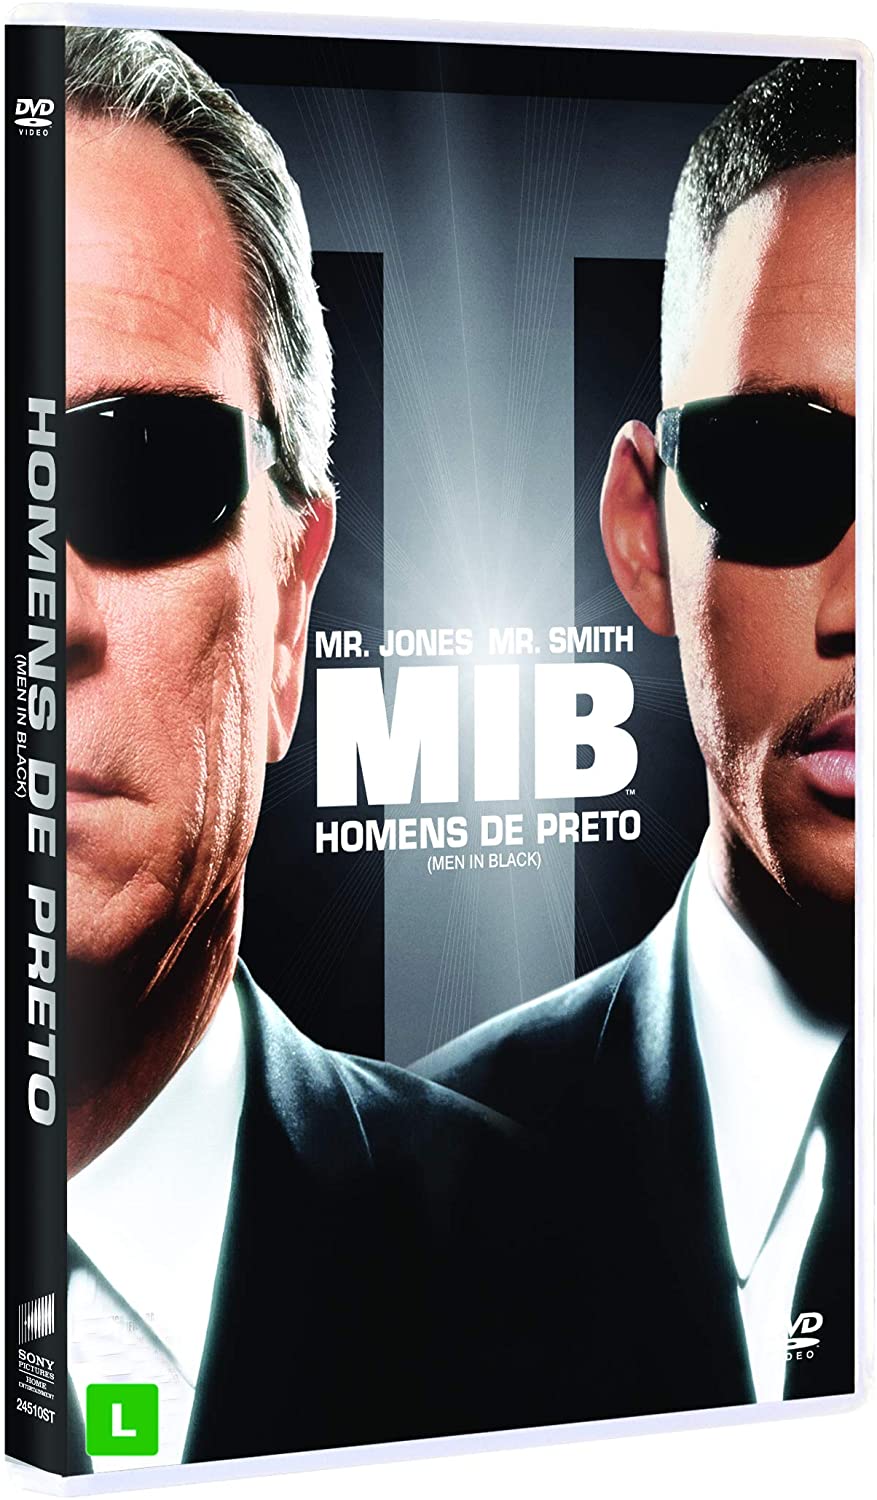 MIB - Homens de Preto - DVD